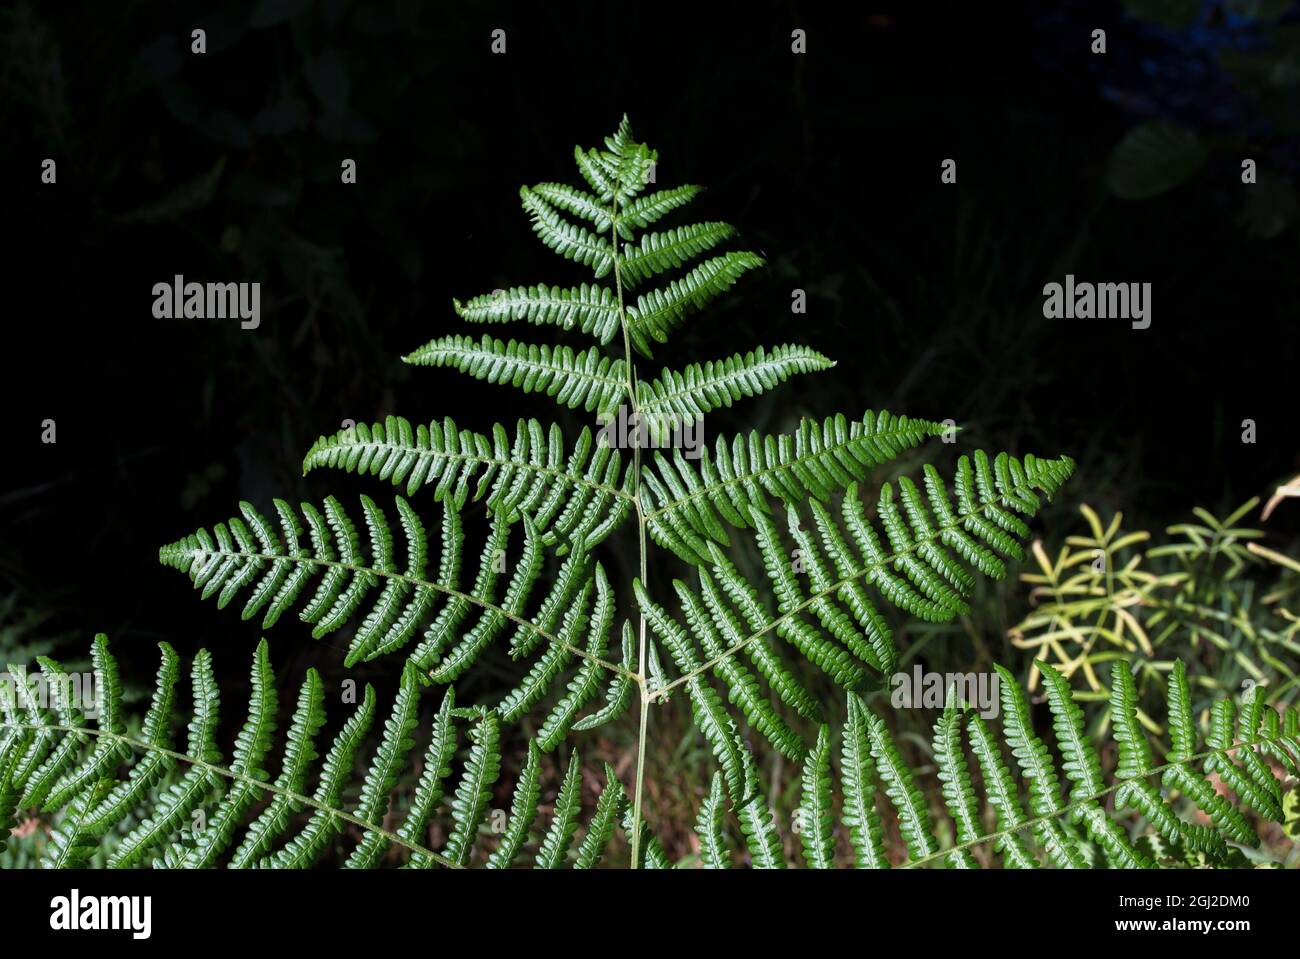 Natura eccezionale immagini e fotografie stock ad alta risoluzione - Alamy